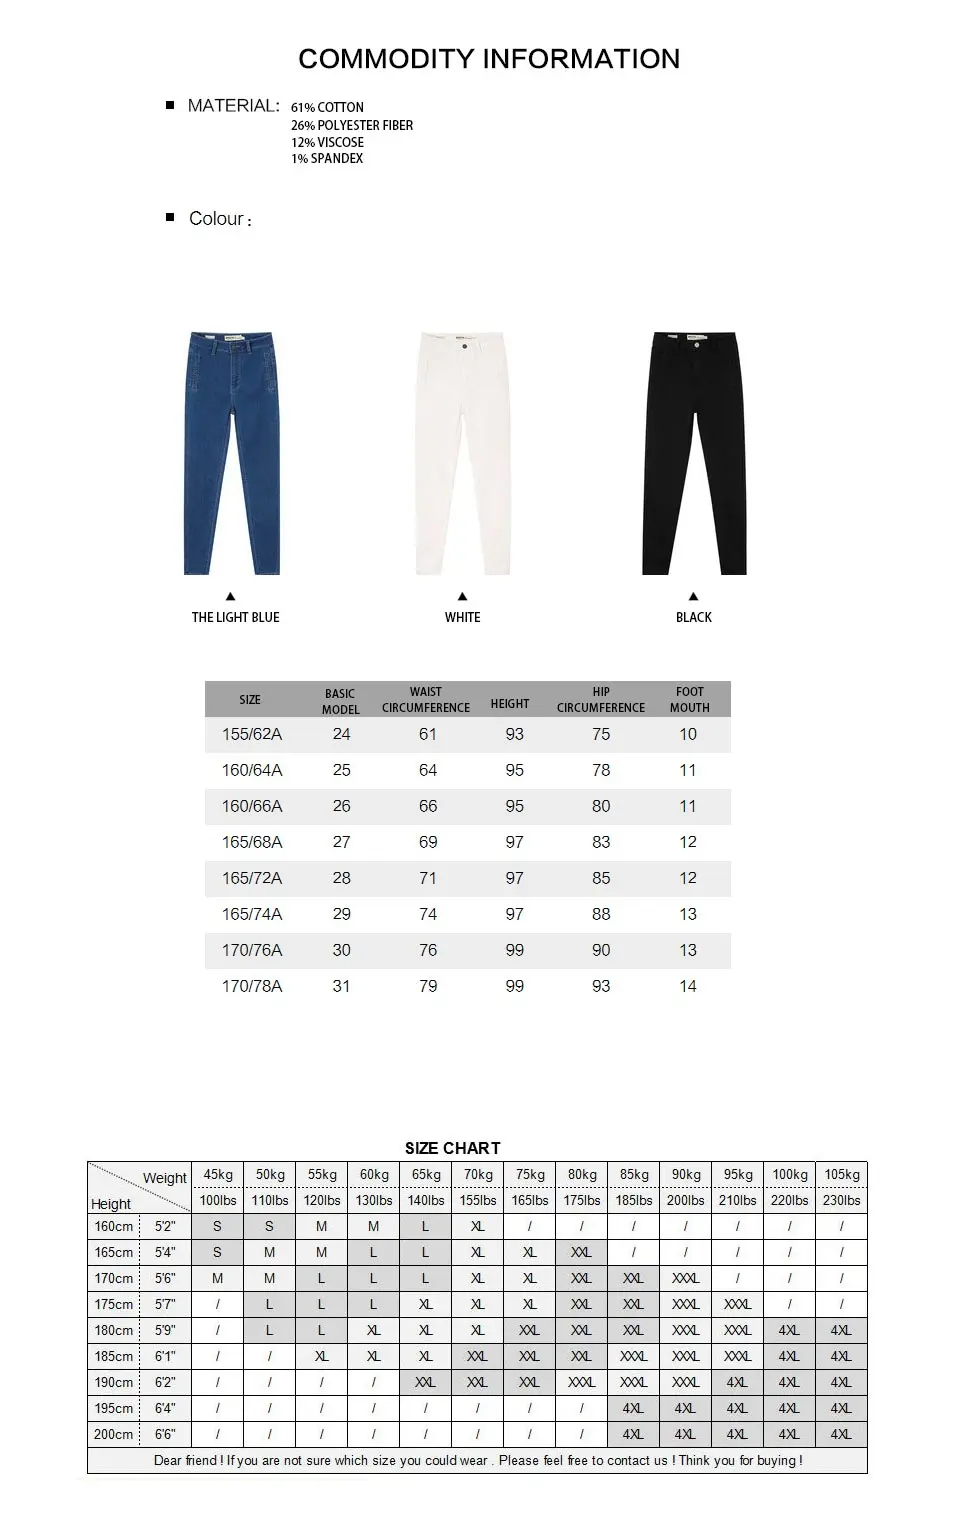 Metersbonwe узкие джинсы для женщин мягкие джинсы базовый простой дизайн сплошной цвет джинсовые узкие брюки высокое качество стрейч талия